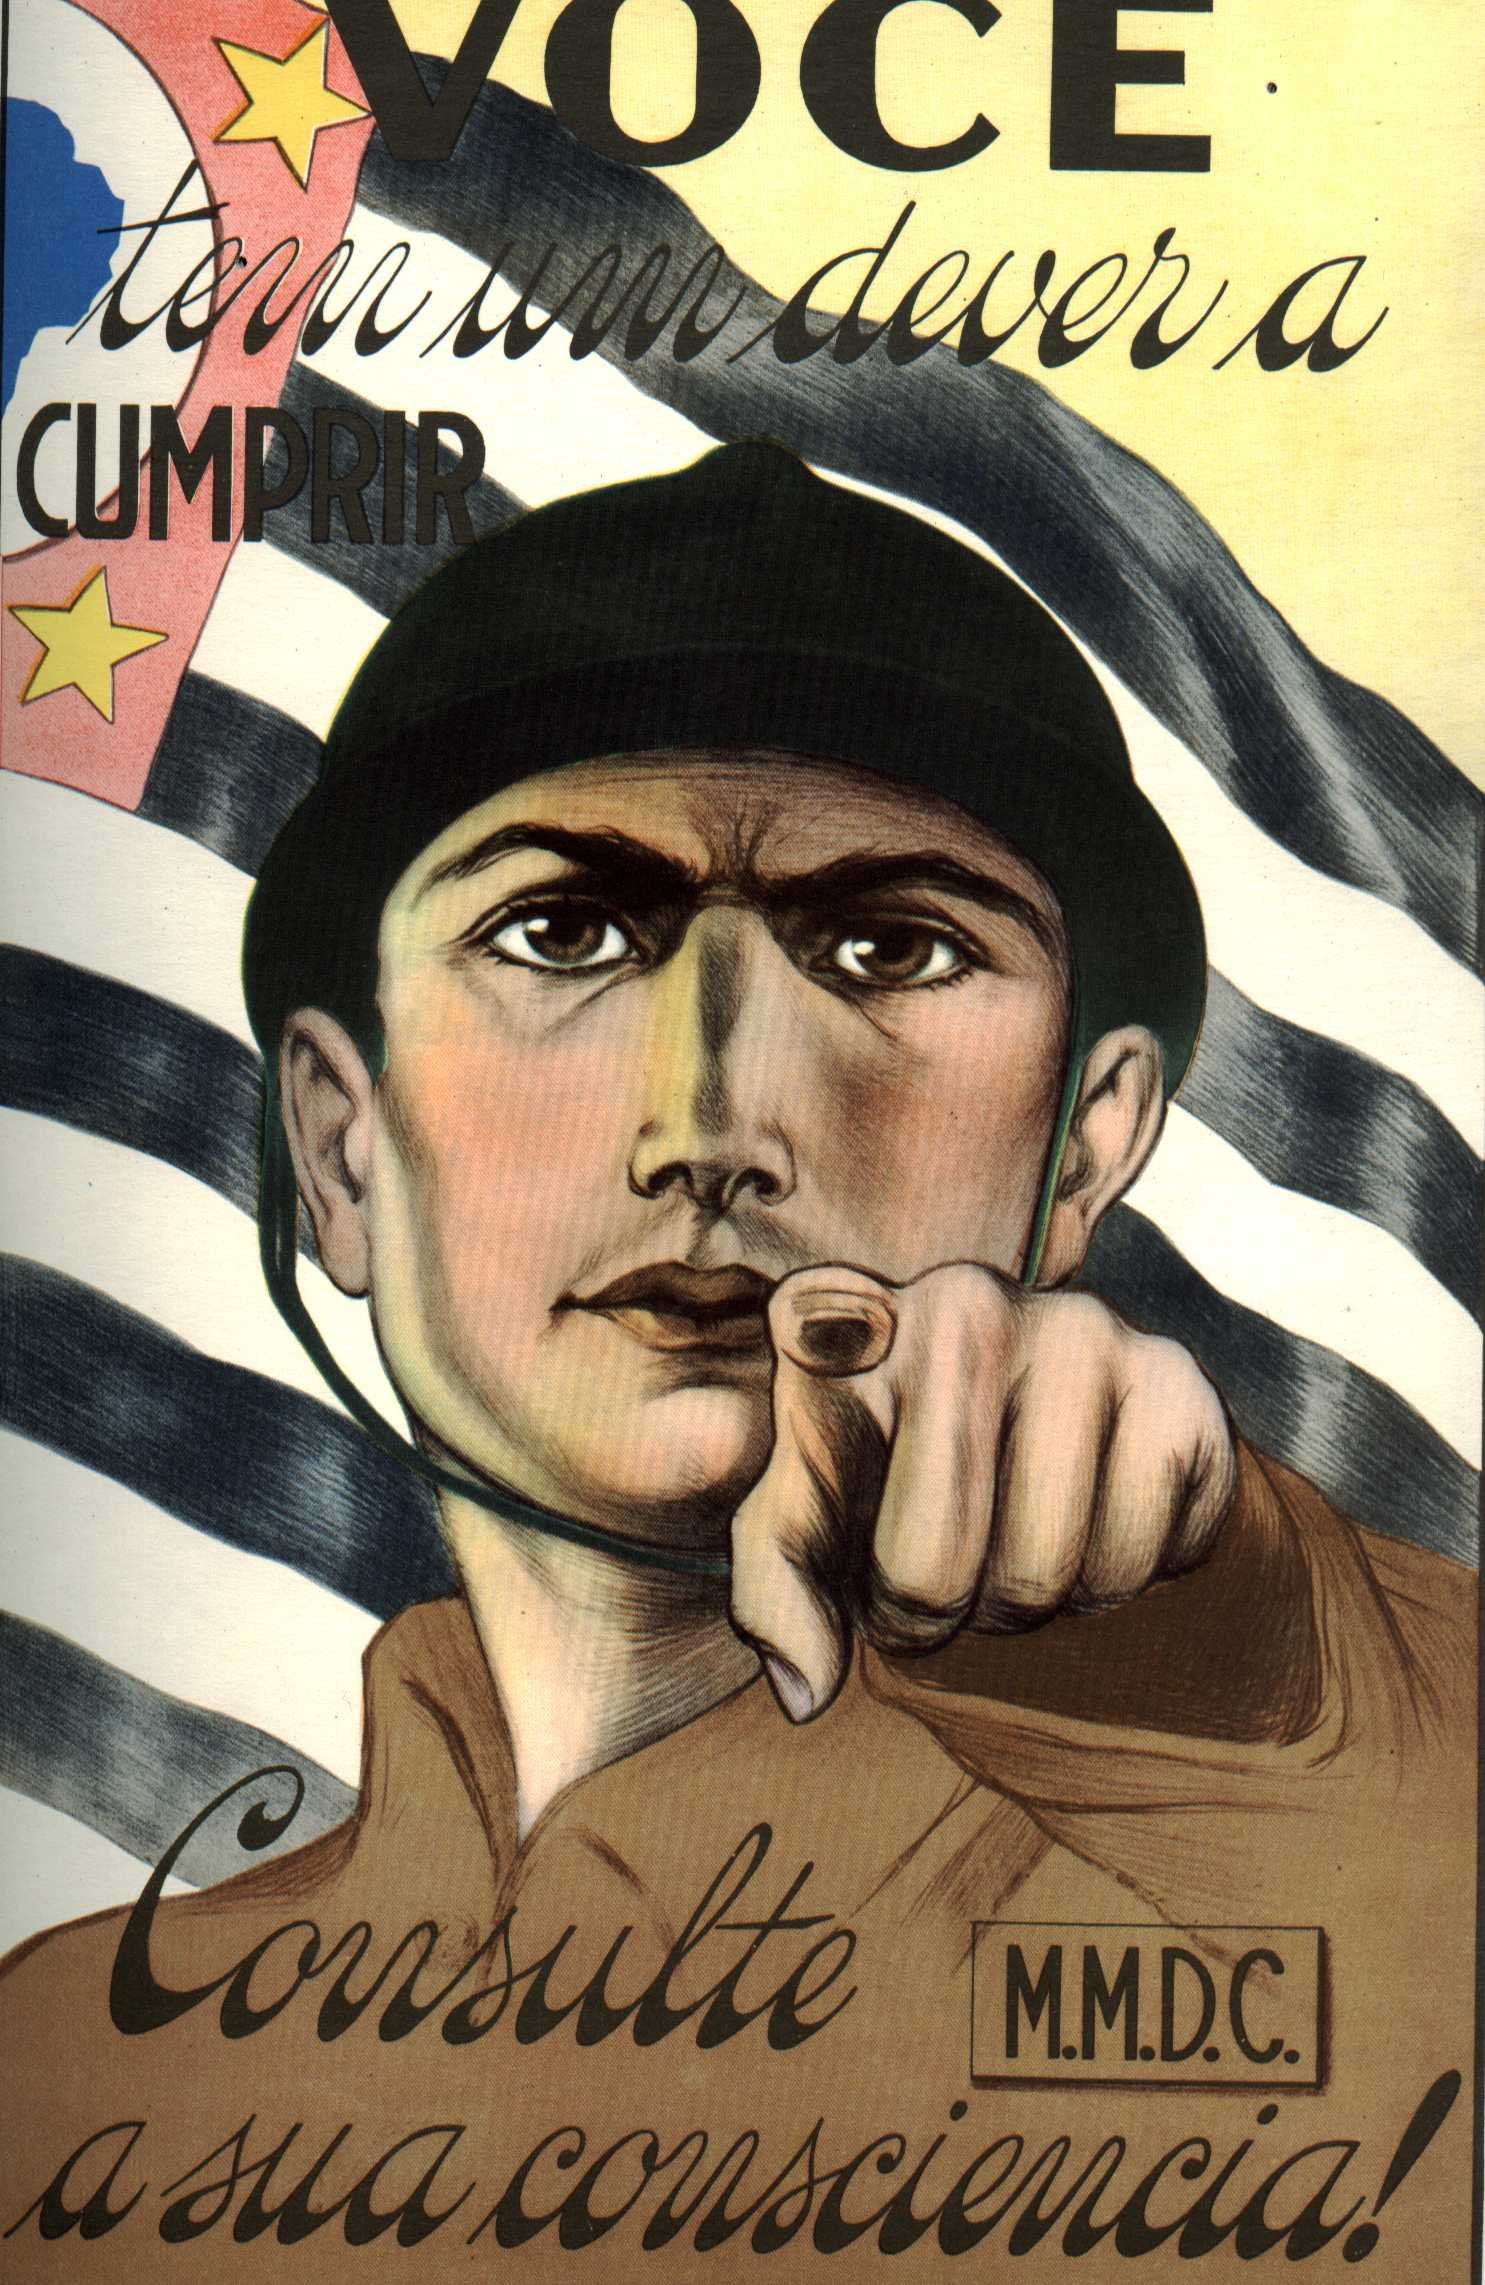 mmdc brazil, Sao, Paulo, Consticionalista, Revolution, 1932 Wallpaper